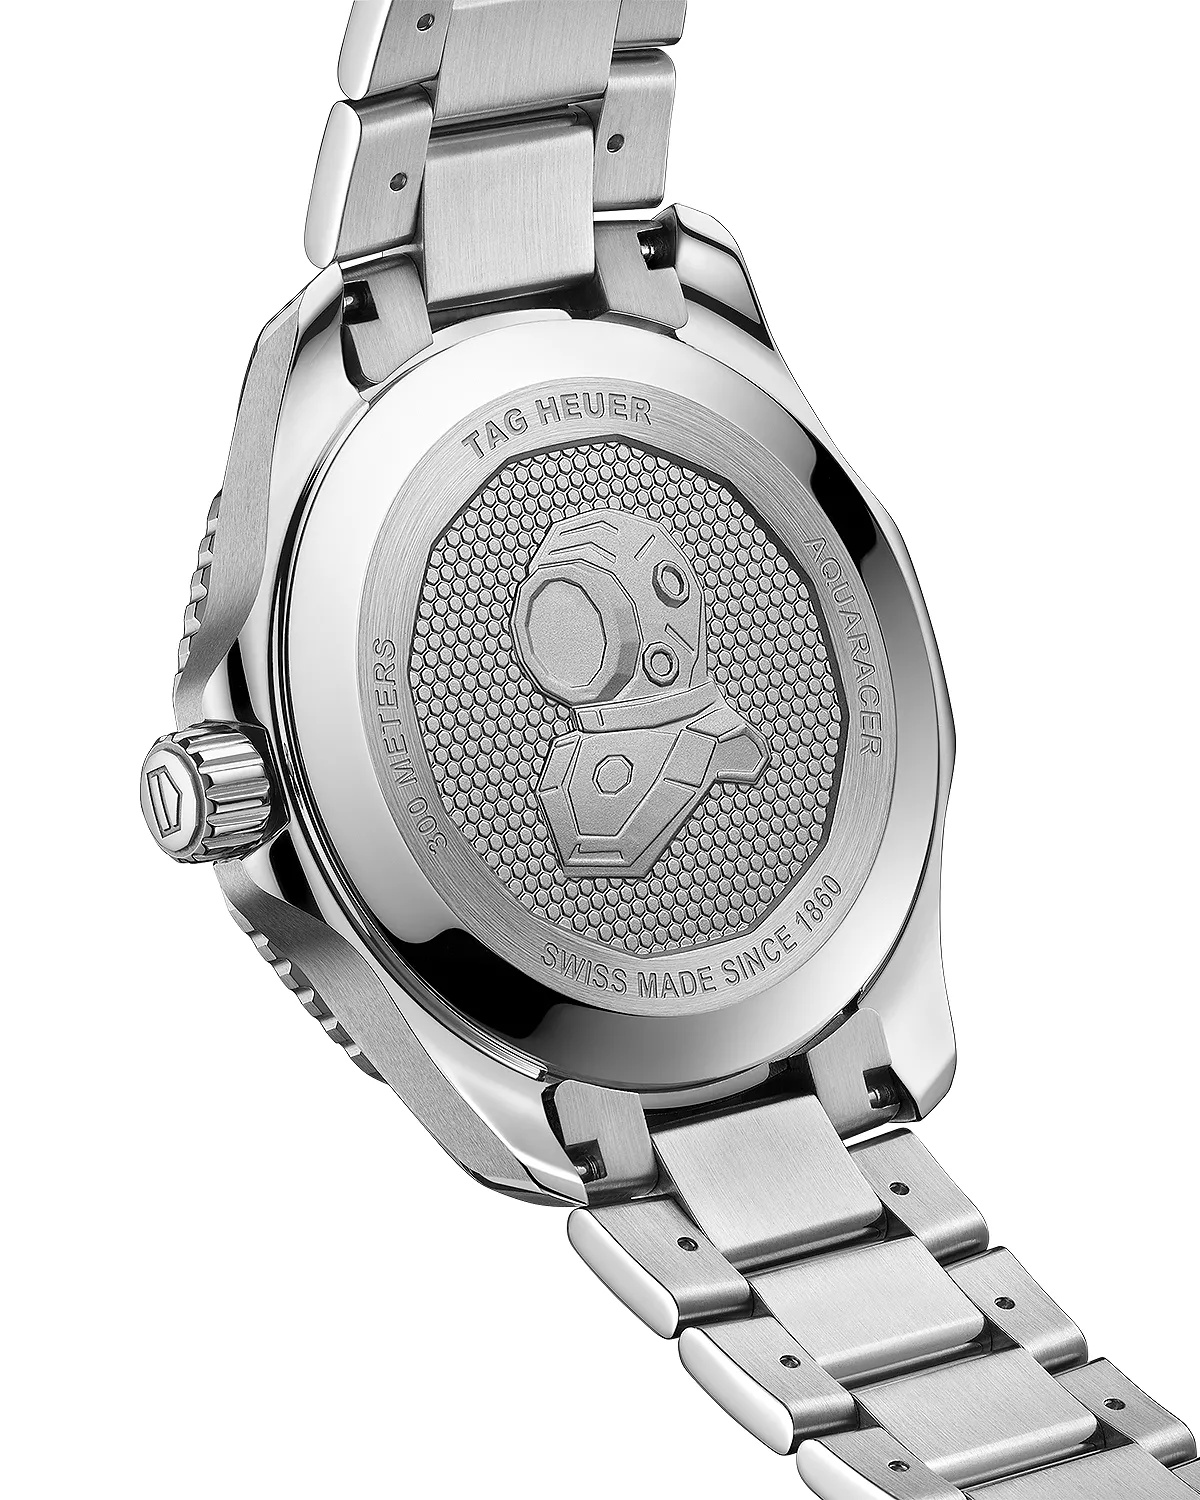 Aquaracer Professional 300 Calibre 5 Watch, 43mm - 5